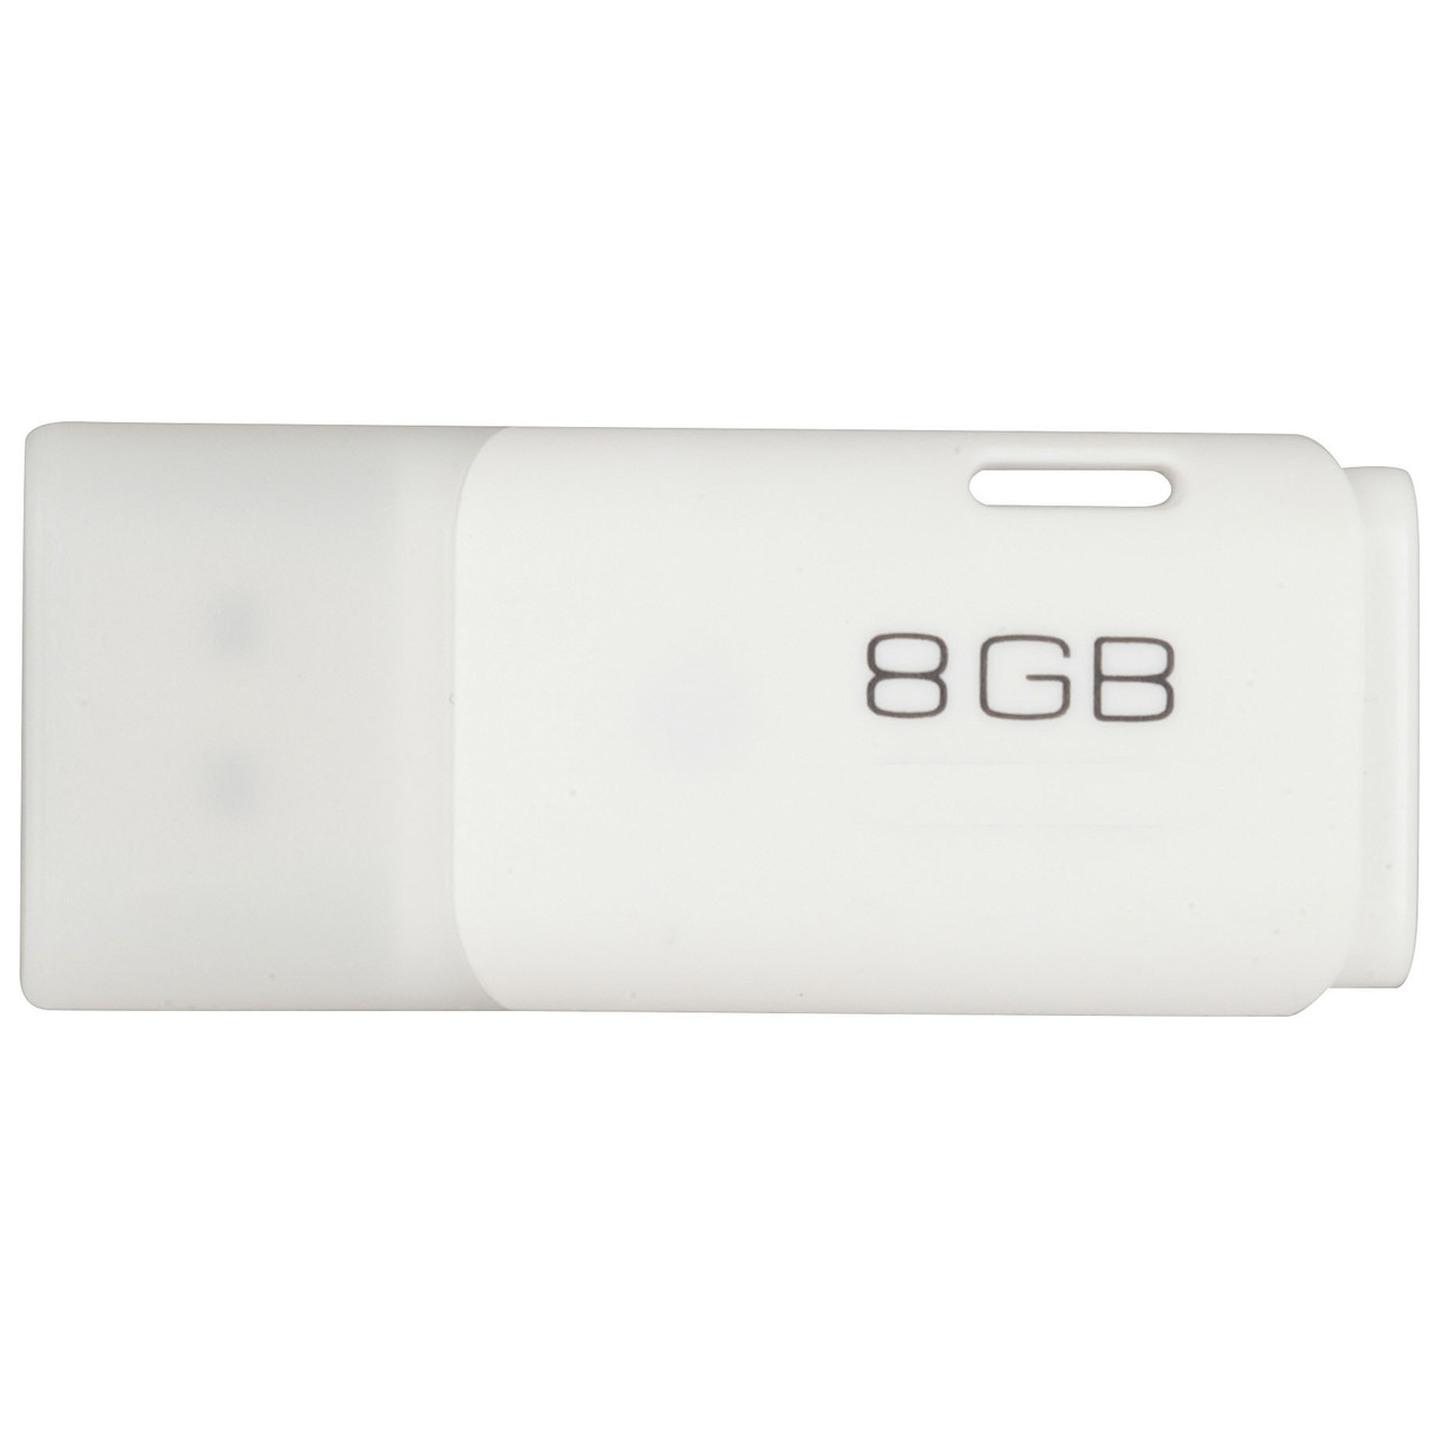 8GB USB Thumbdrive